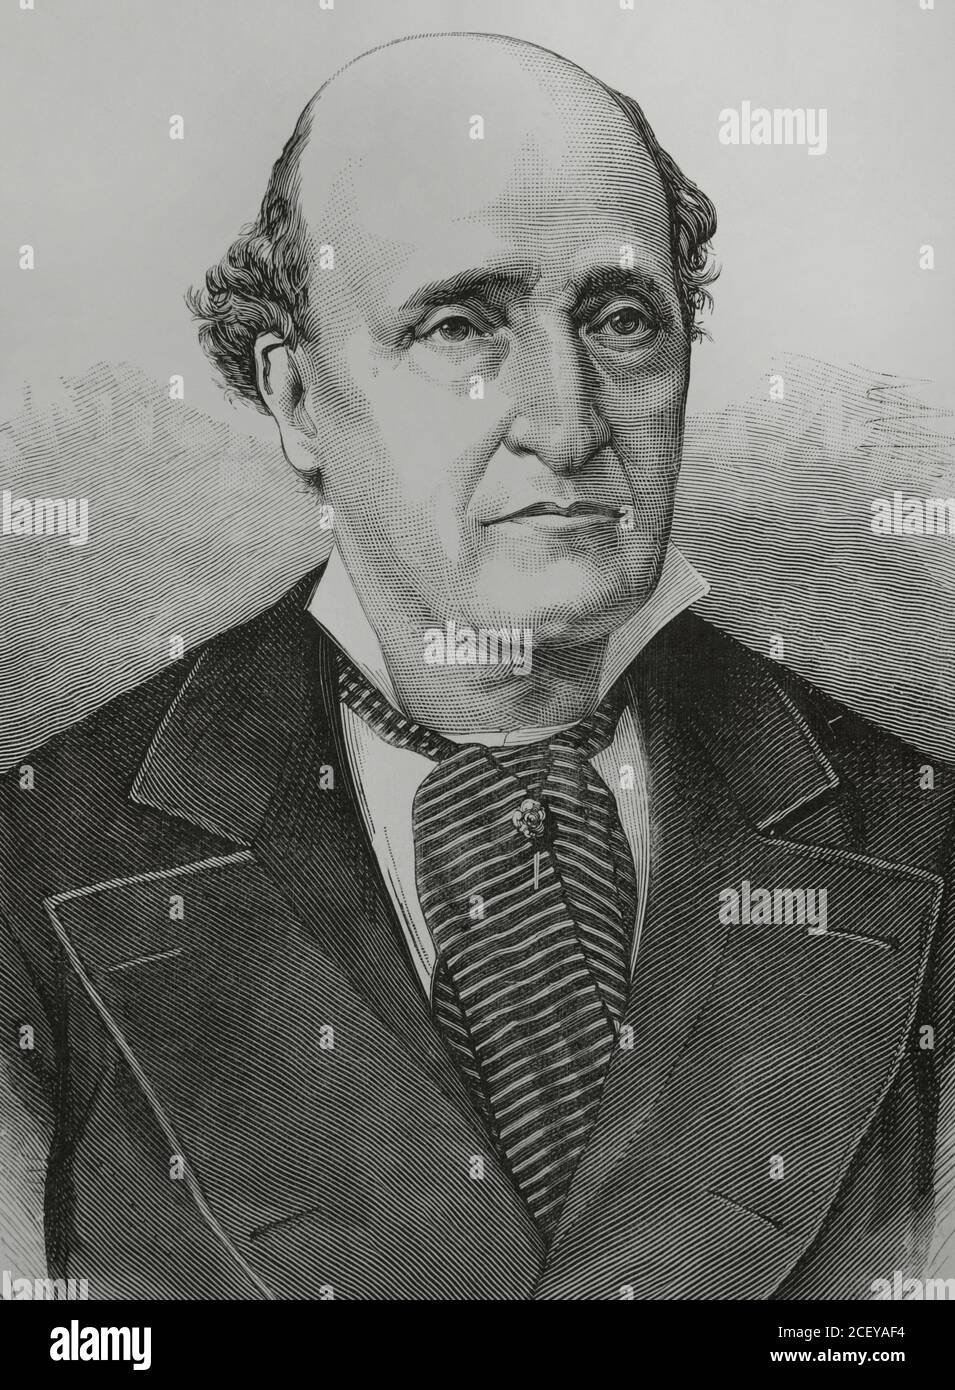 José Valero Villavicencio (1808-1891). Spanish actor. Illustration by Badillo. Engraving by Arturo Carretero. La Ilustracion Española y Americana, 1881. Stock Photo